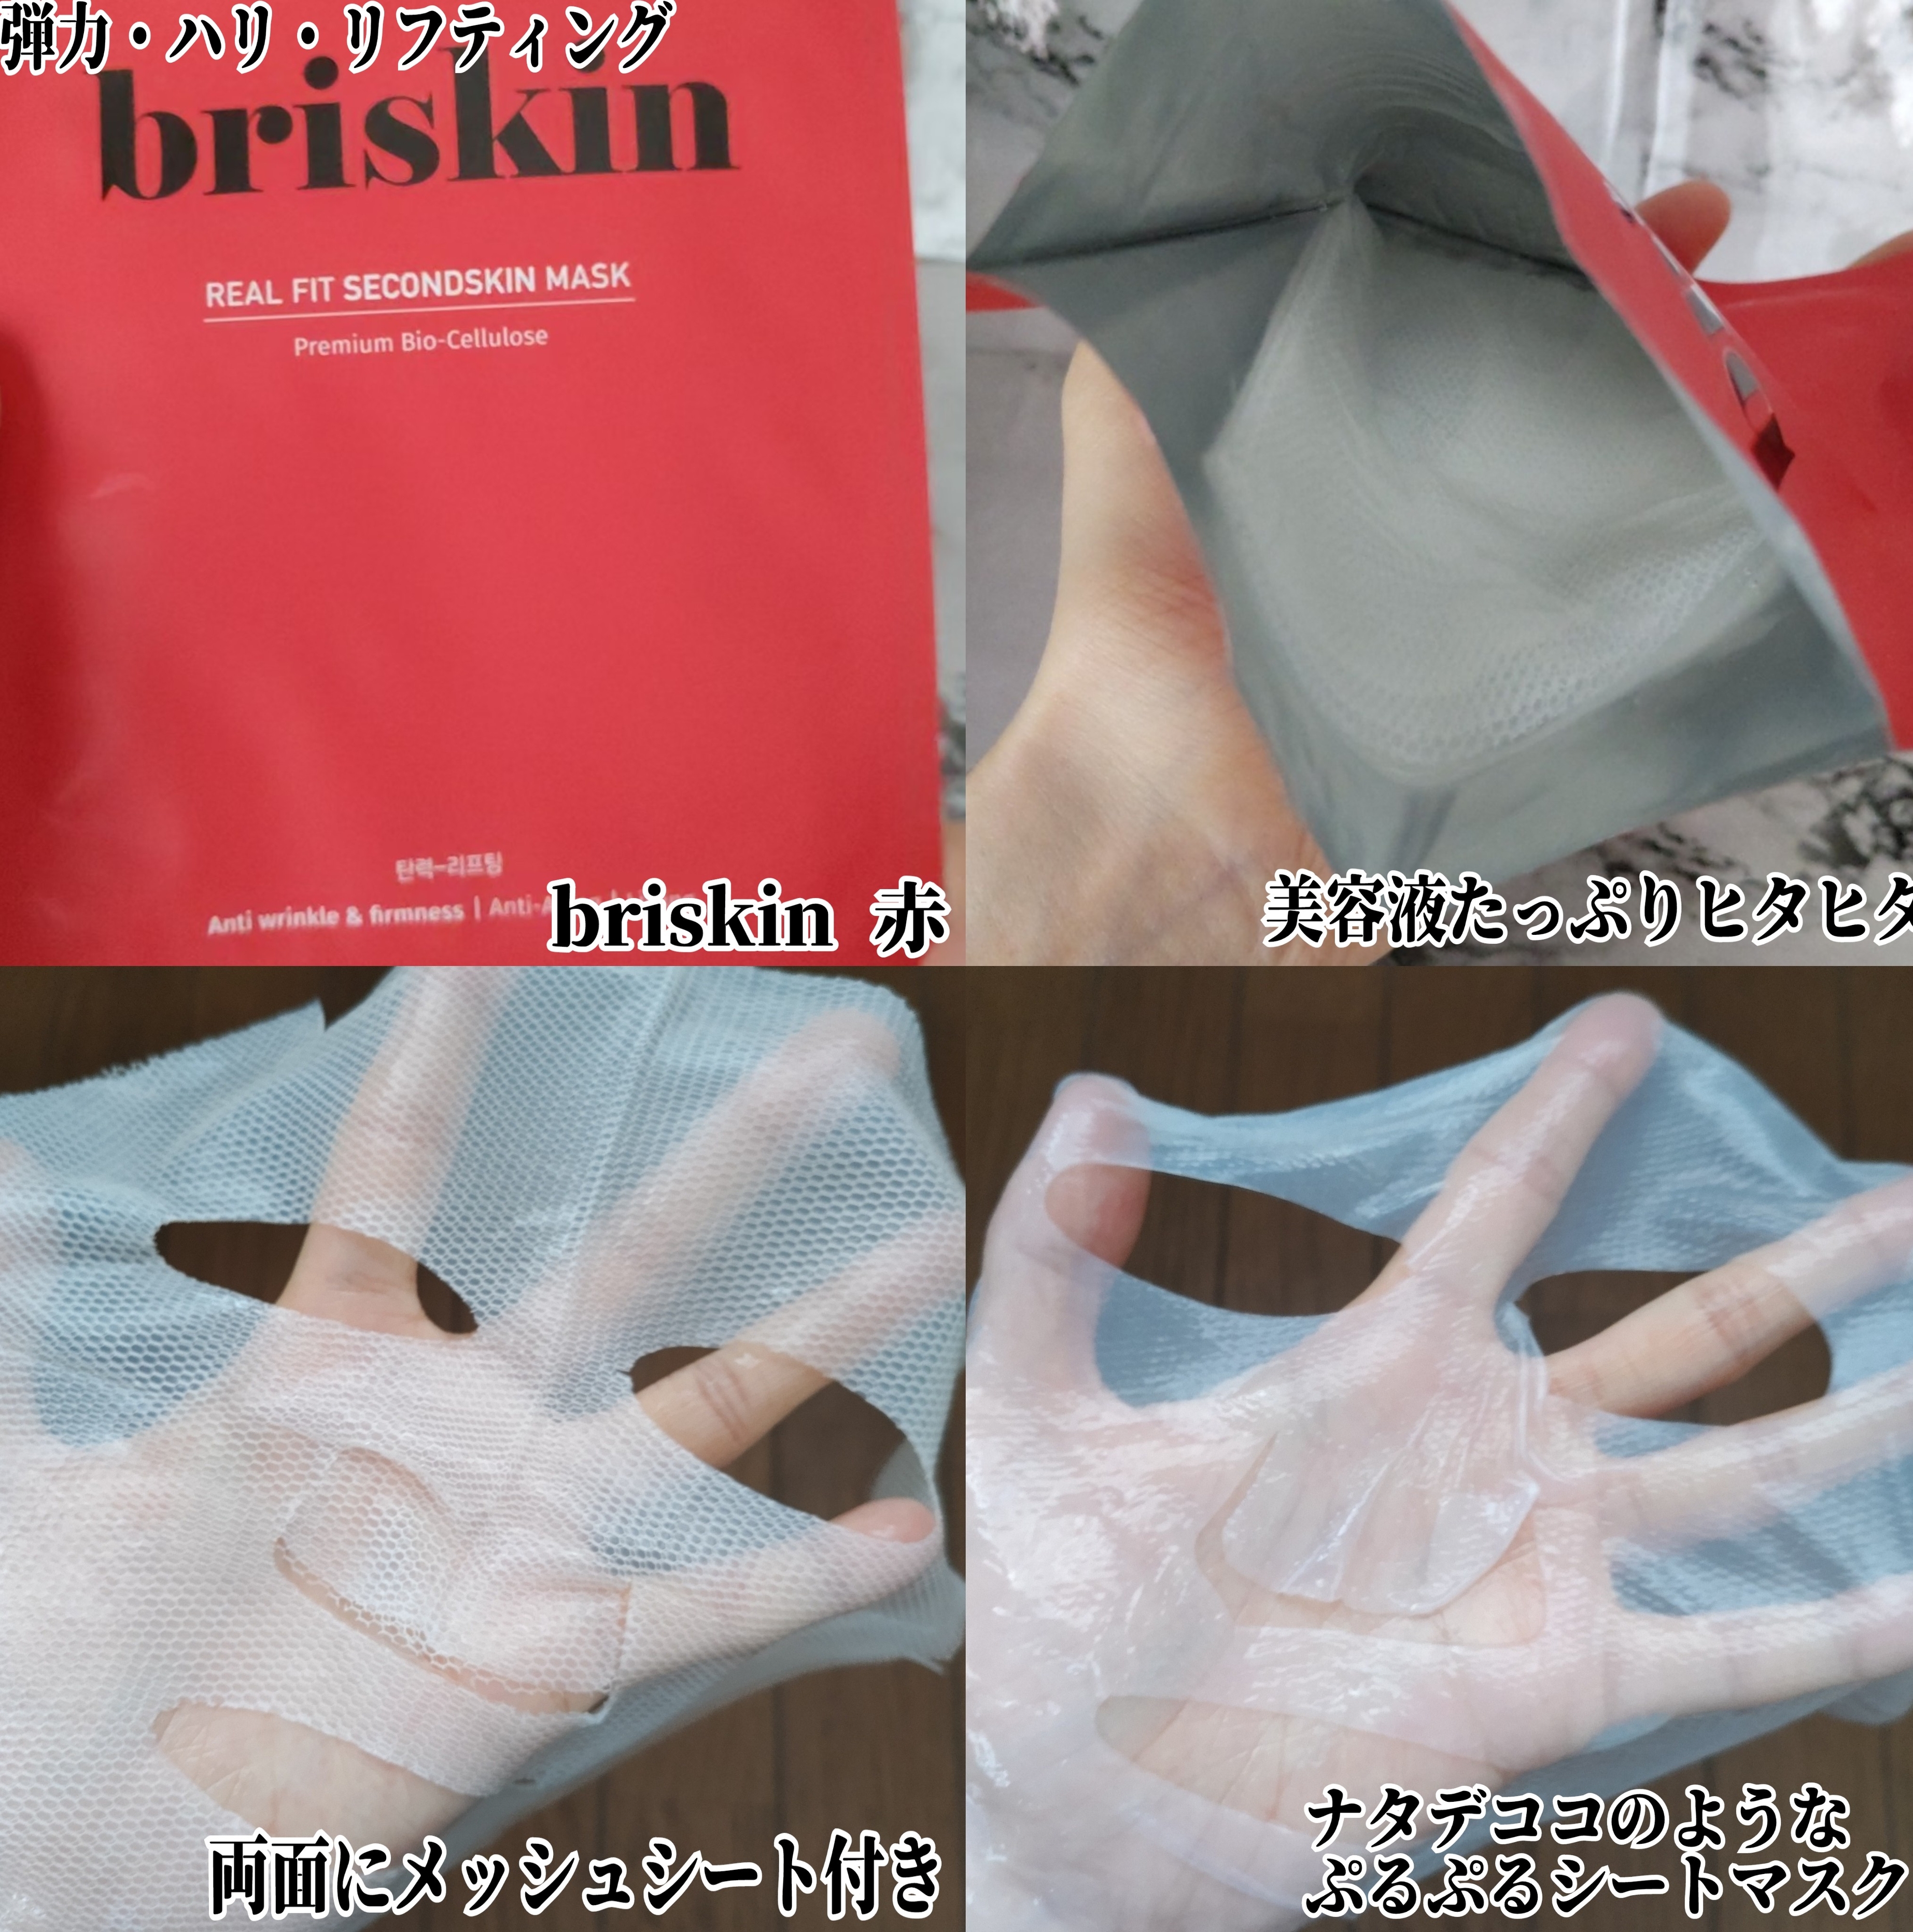 リアルフィット セカンドスキン マスク レッドを使ったYuKaRi♡さんのクチコミ画像2